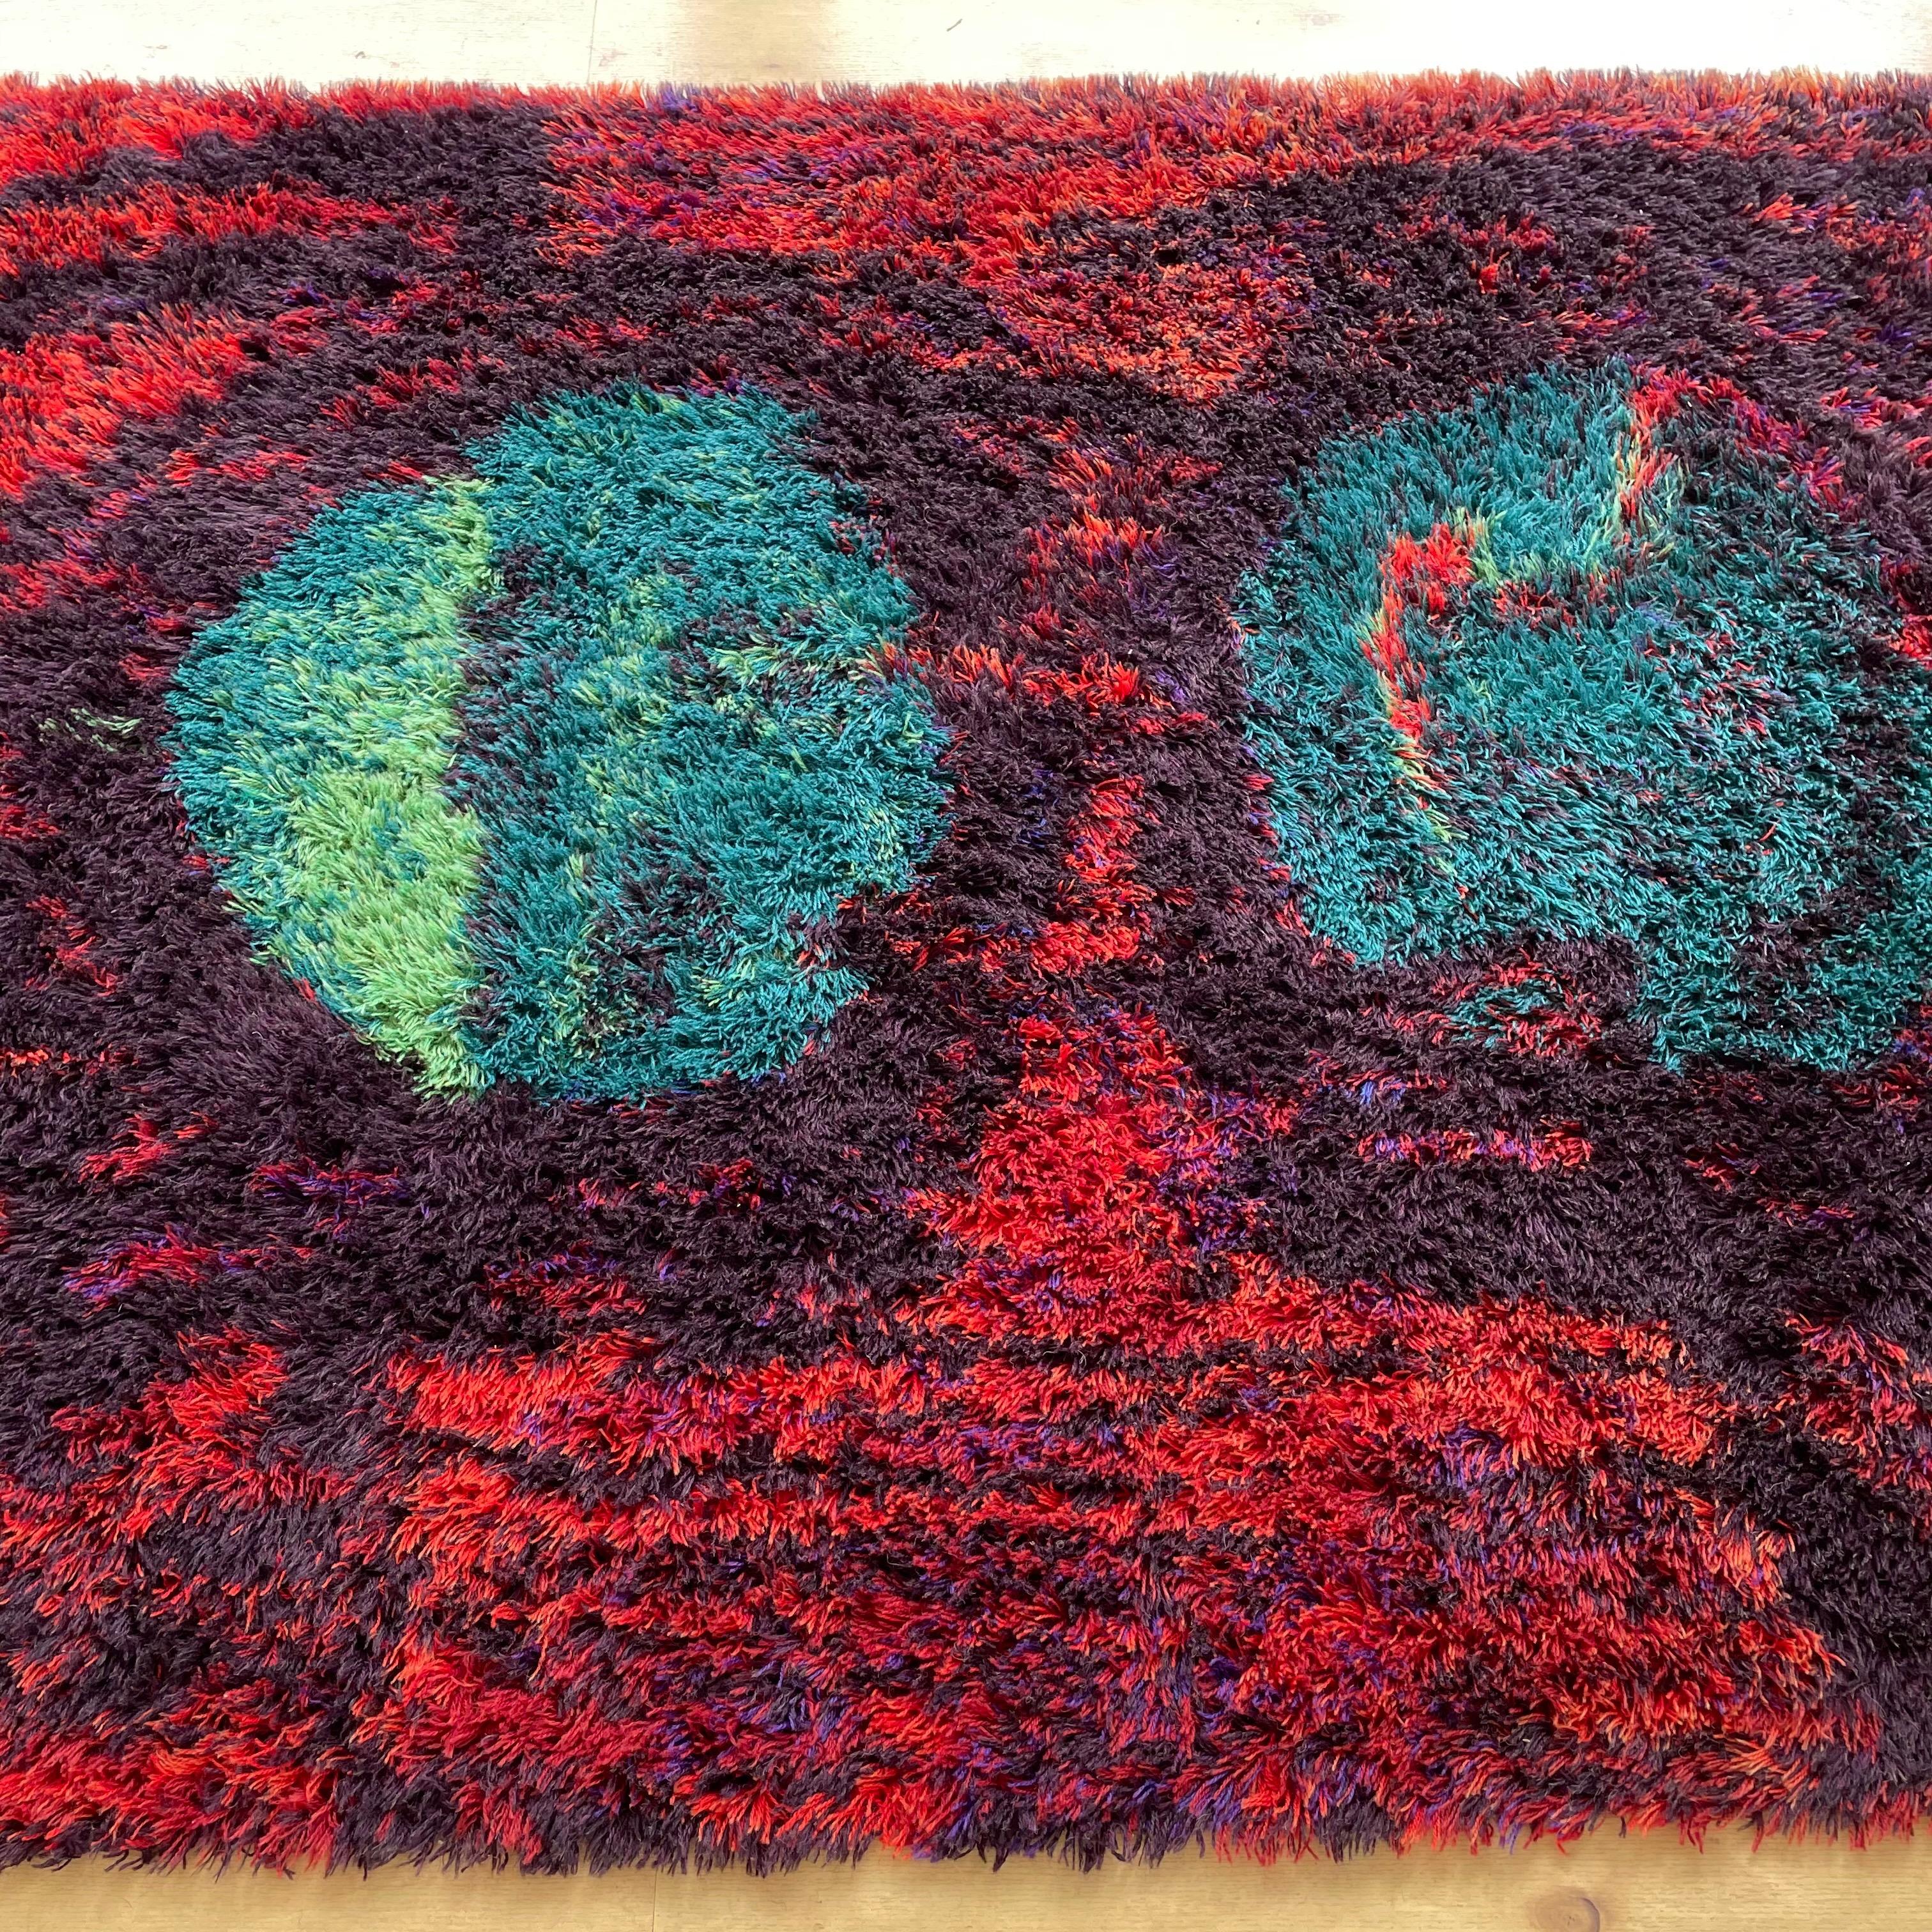 Danish Modern Wool Rya Rug Tapestry by Hojer Eksport Wilton, 1960s, Denmark no 2 For Sale 7